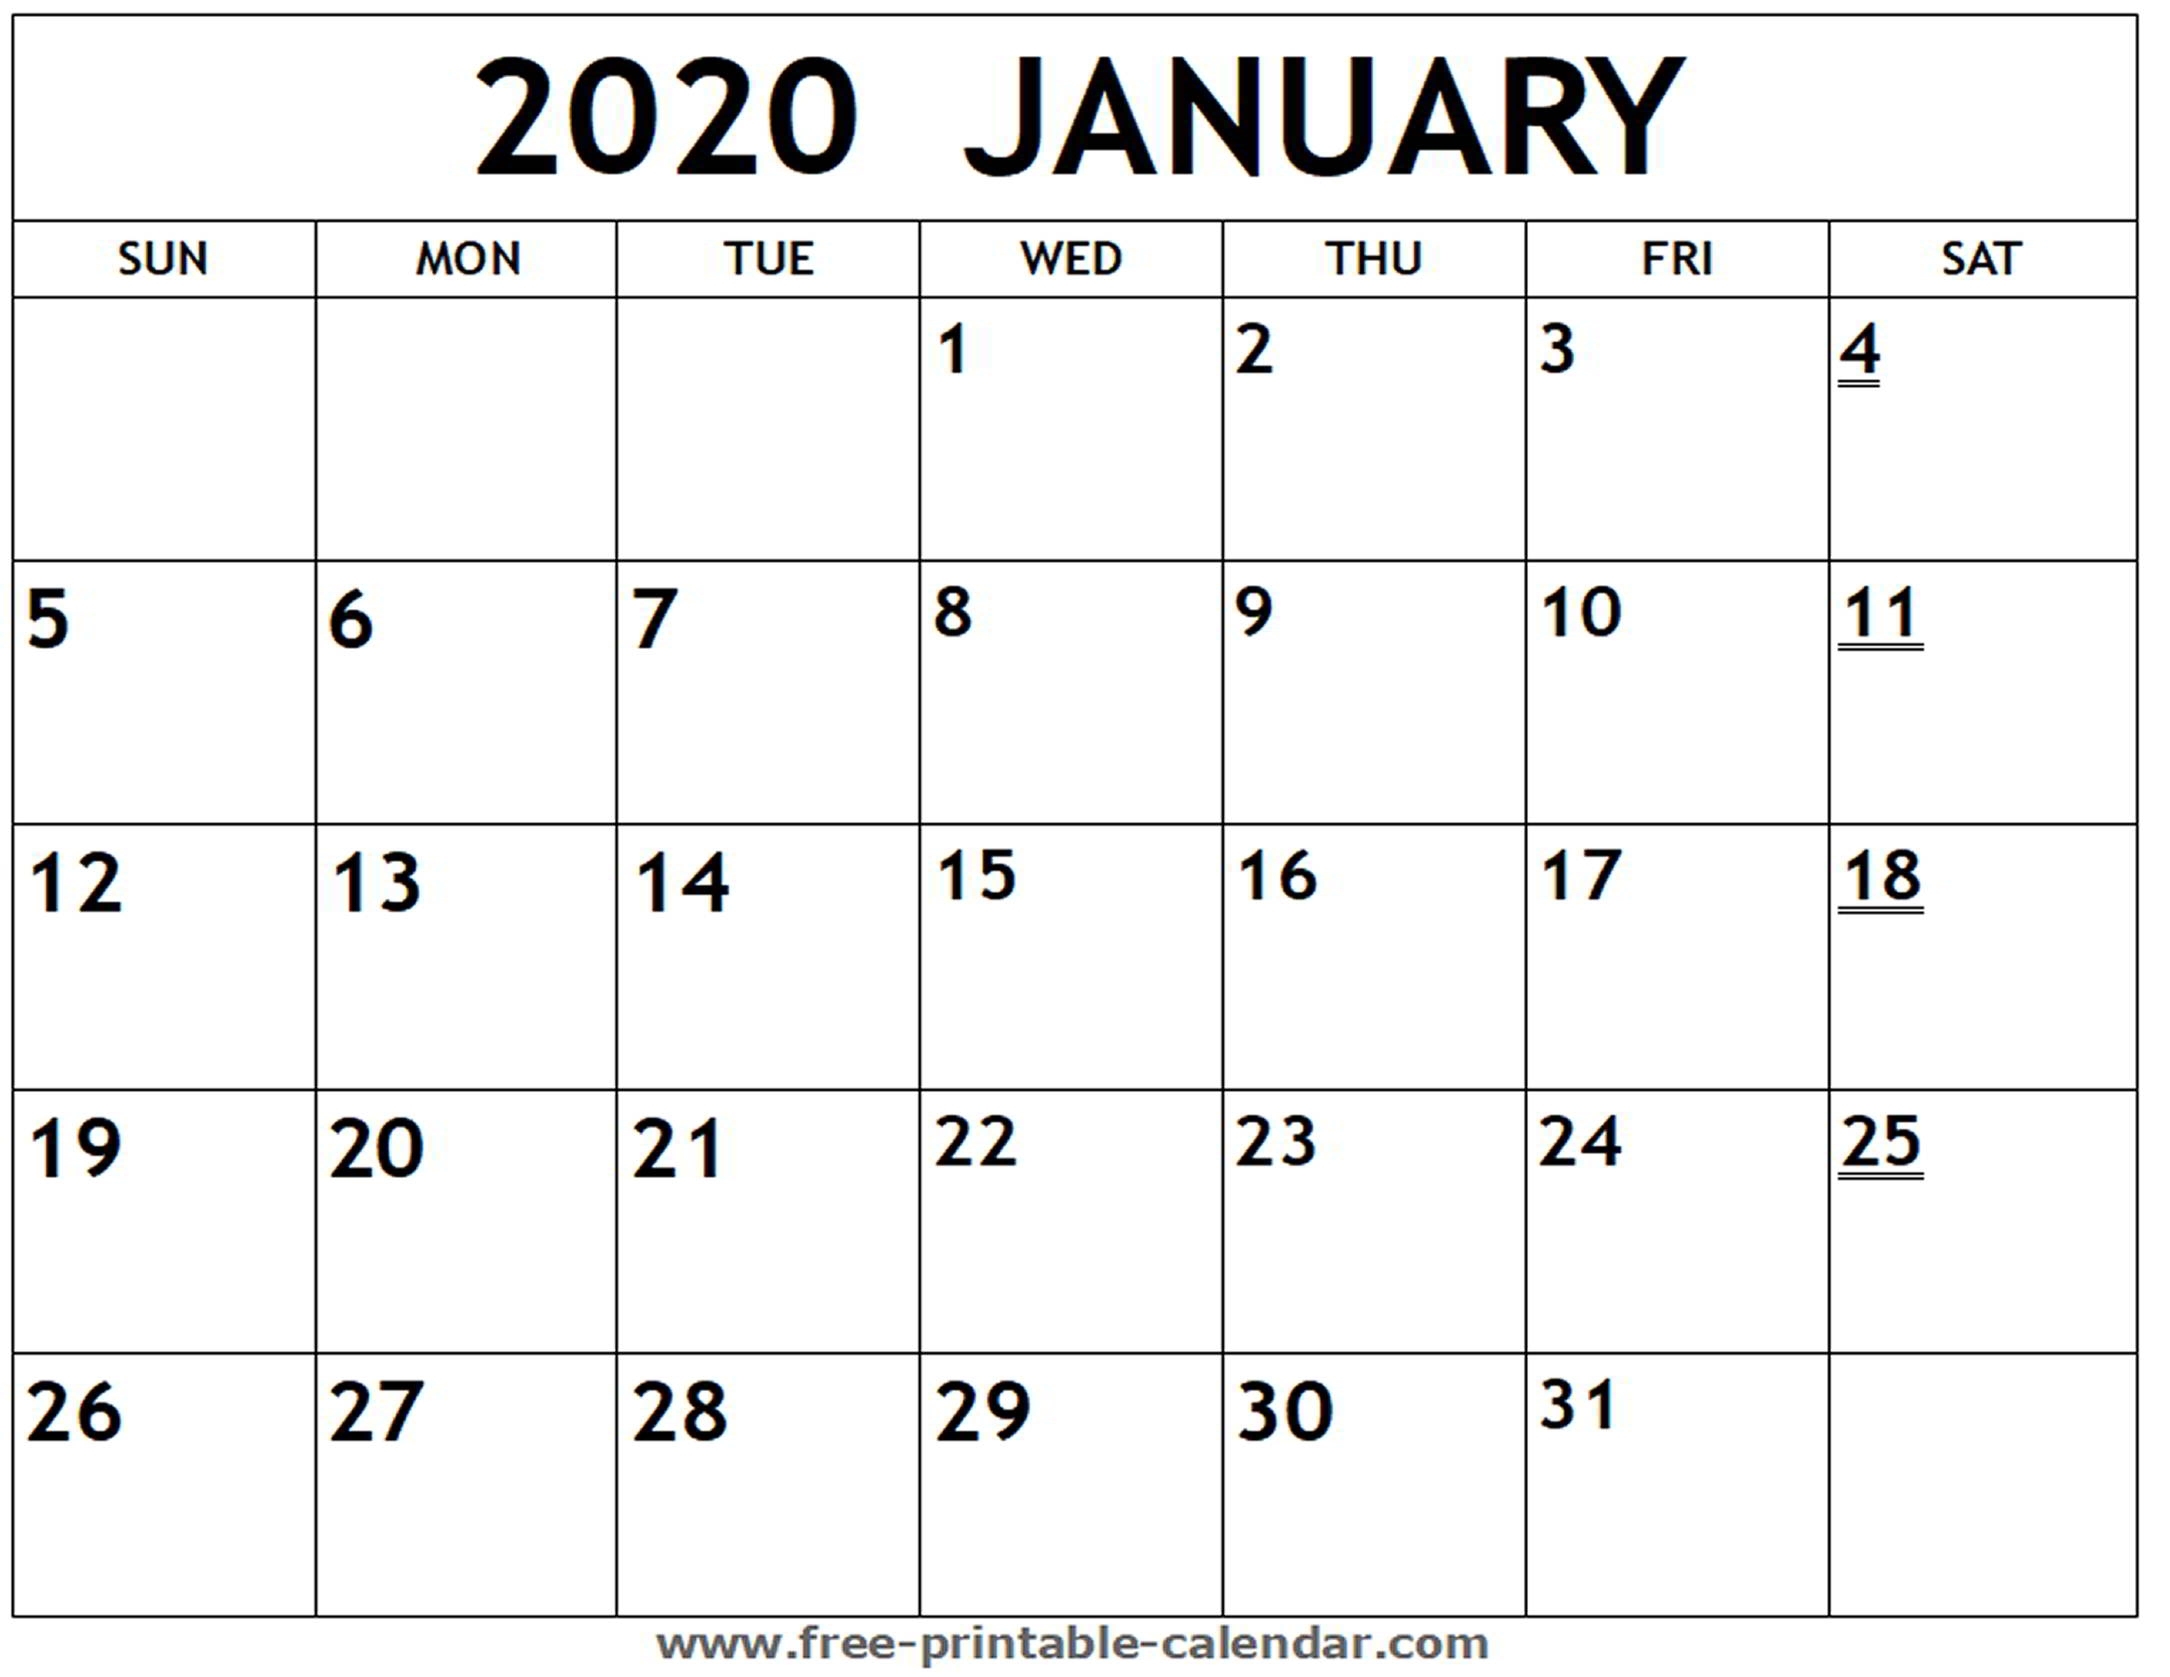 Printable 2020 January Calendar - Free-Printable-Calendar intended for Free Monthly Printable Calendar 2020